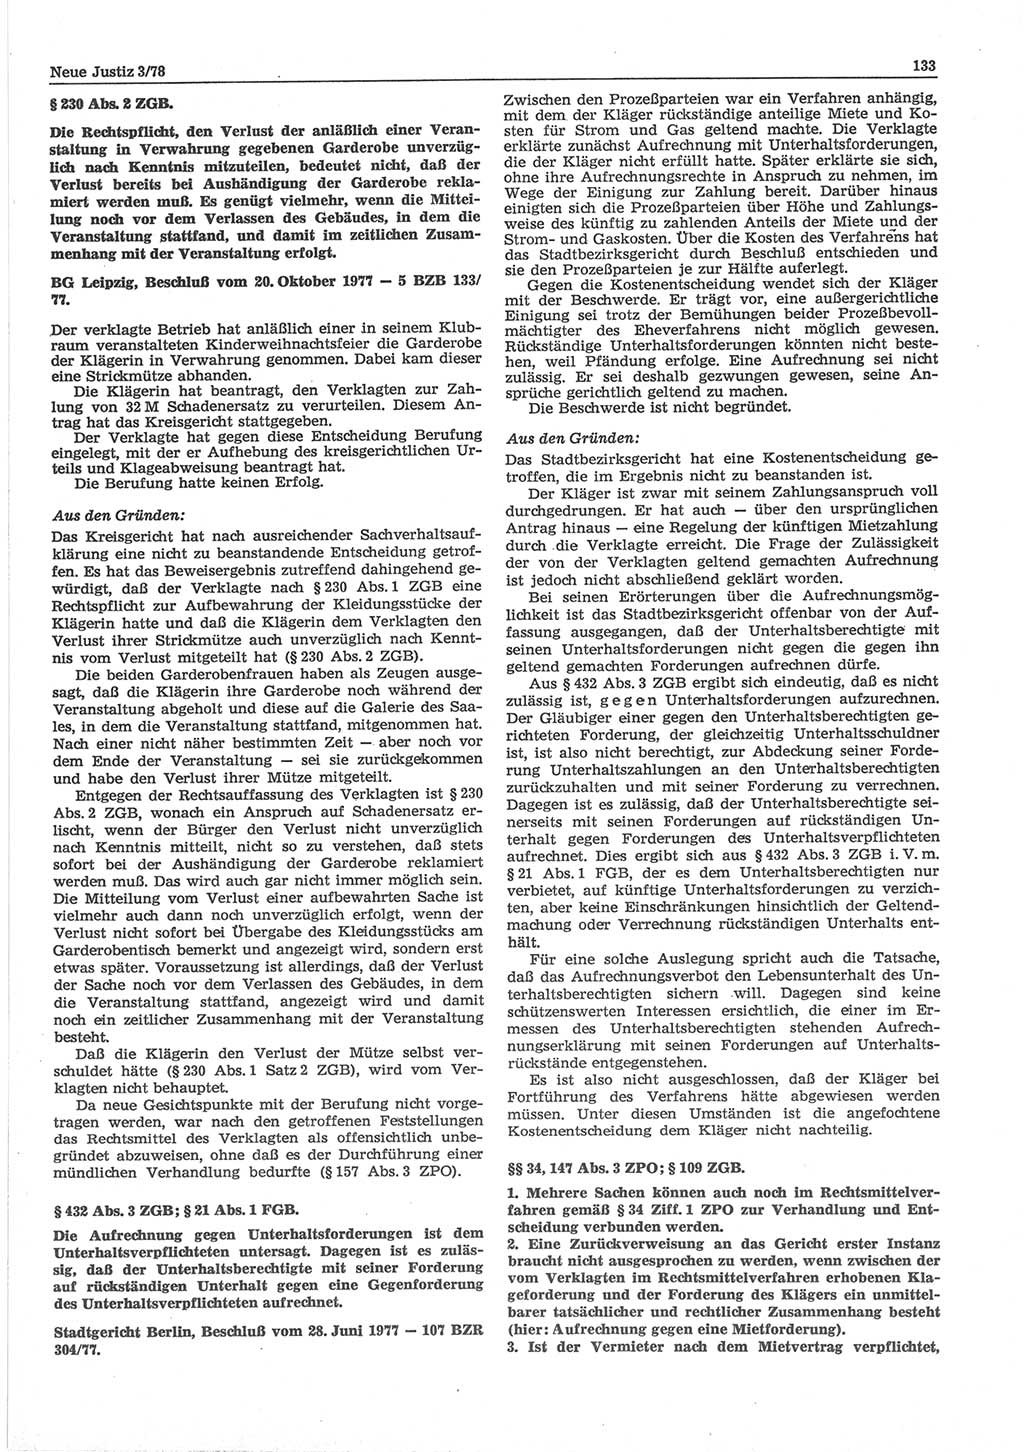 Neue Justiz (NJ), Zeitschrift für sozialistisches Recht und Gesetzlichkeit [Deutsche Demokratische Republik (DDR)], 32. Jahrgang 1978, Seite 133 (NJ DDR 1978, S. 133)